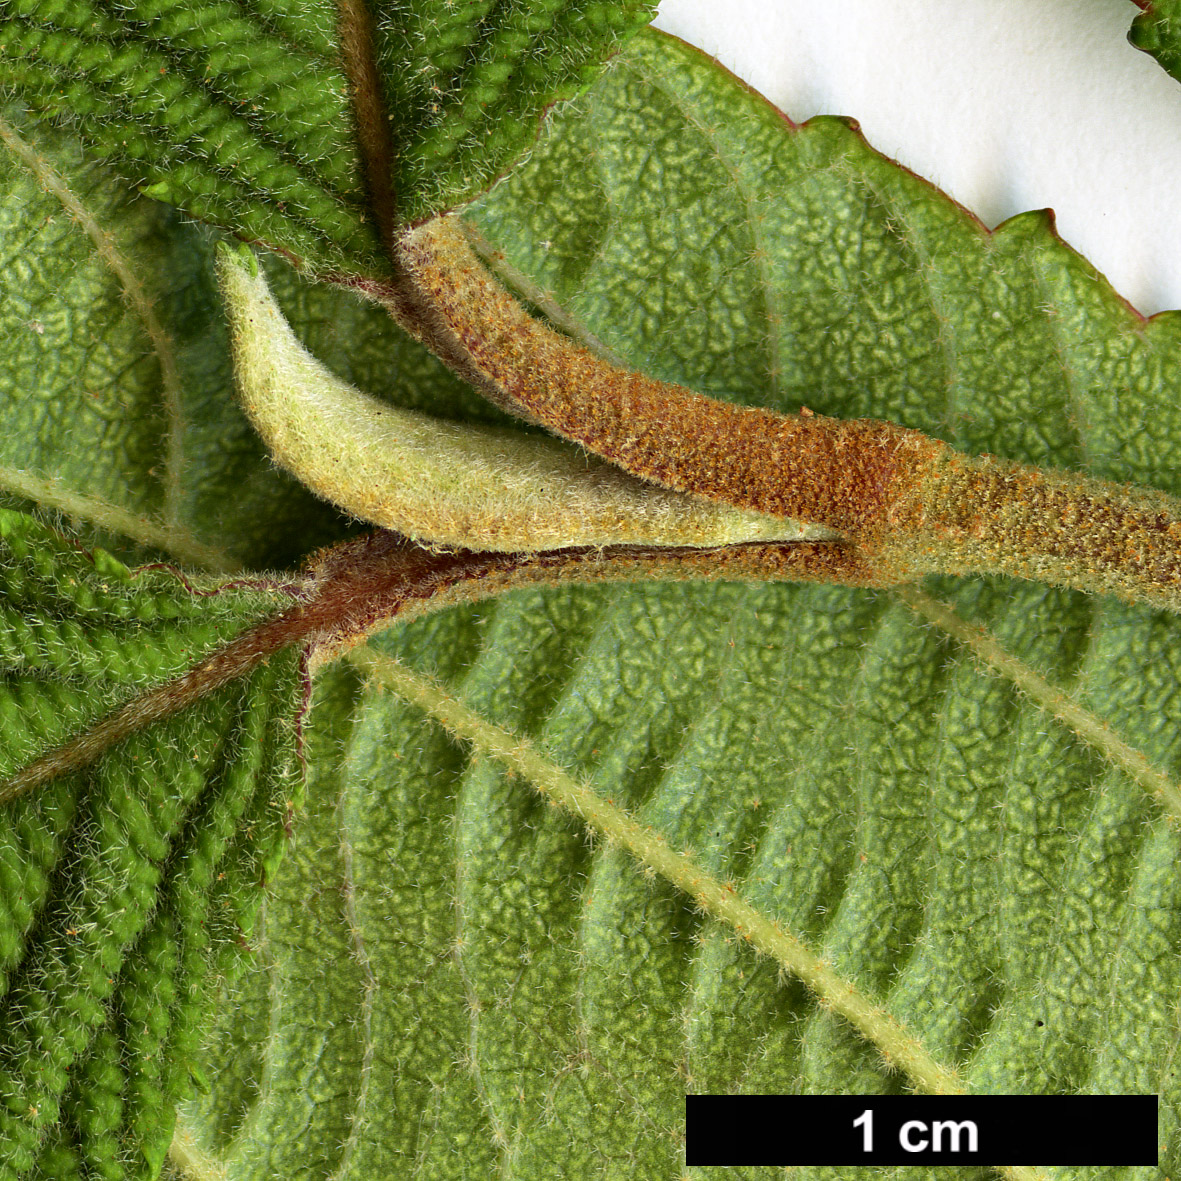 High resolution image: Family: Adoxaceae - Genus: Viburnum - Taxon: plicatum - SpeciesSub: f. tomentosum